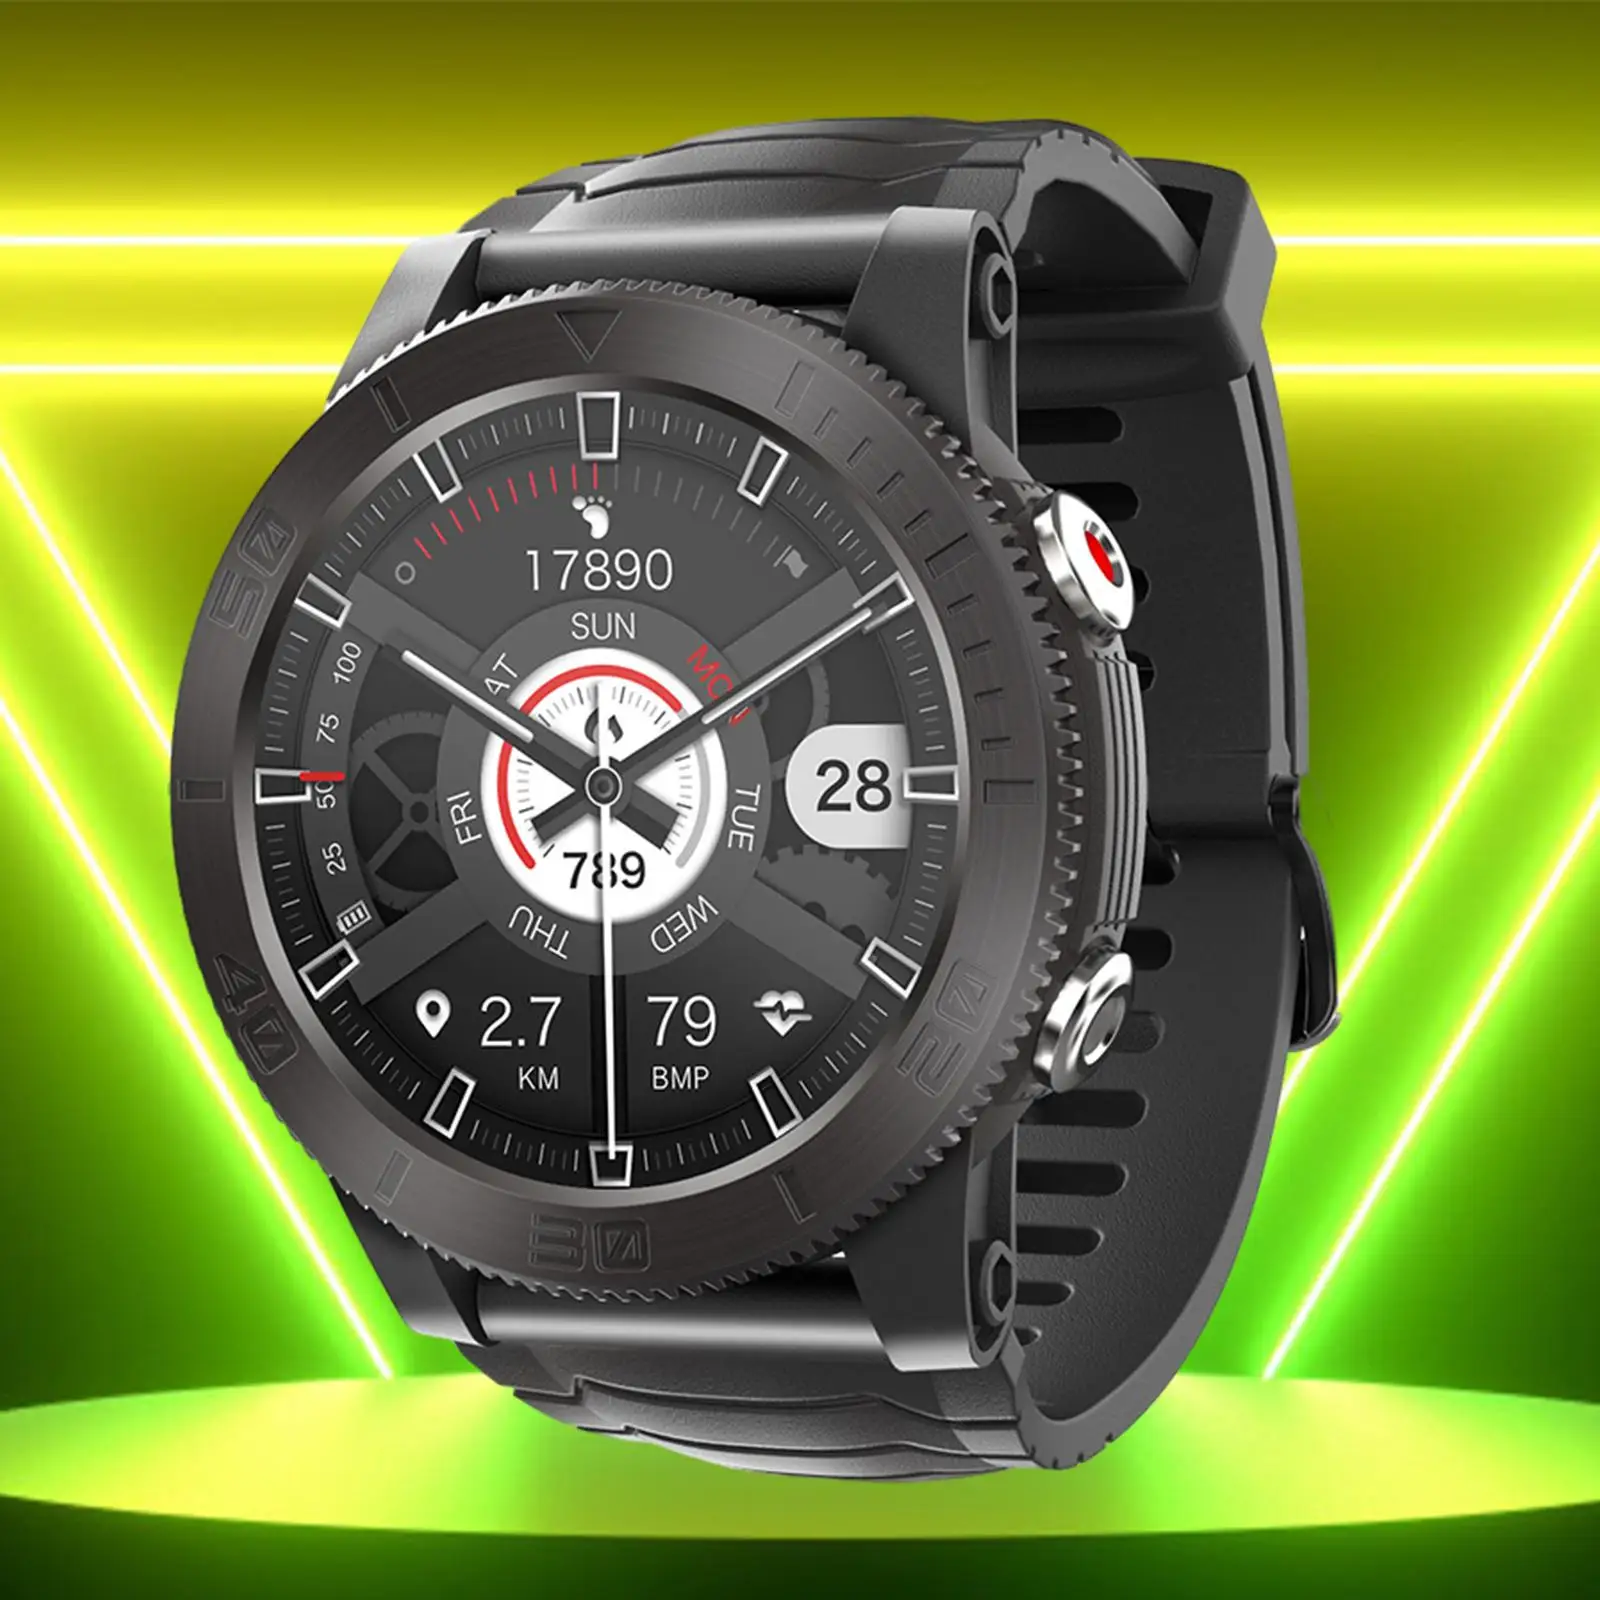 GPS Smart Watch Waterproof 1.32inch Screen Compass Multifunction for Outdoor